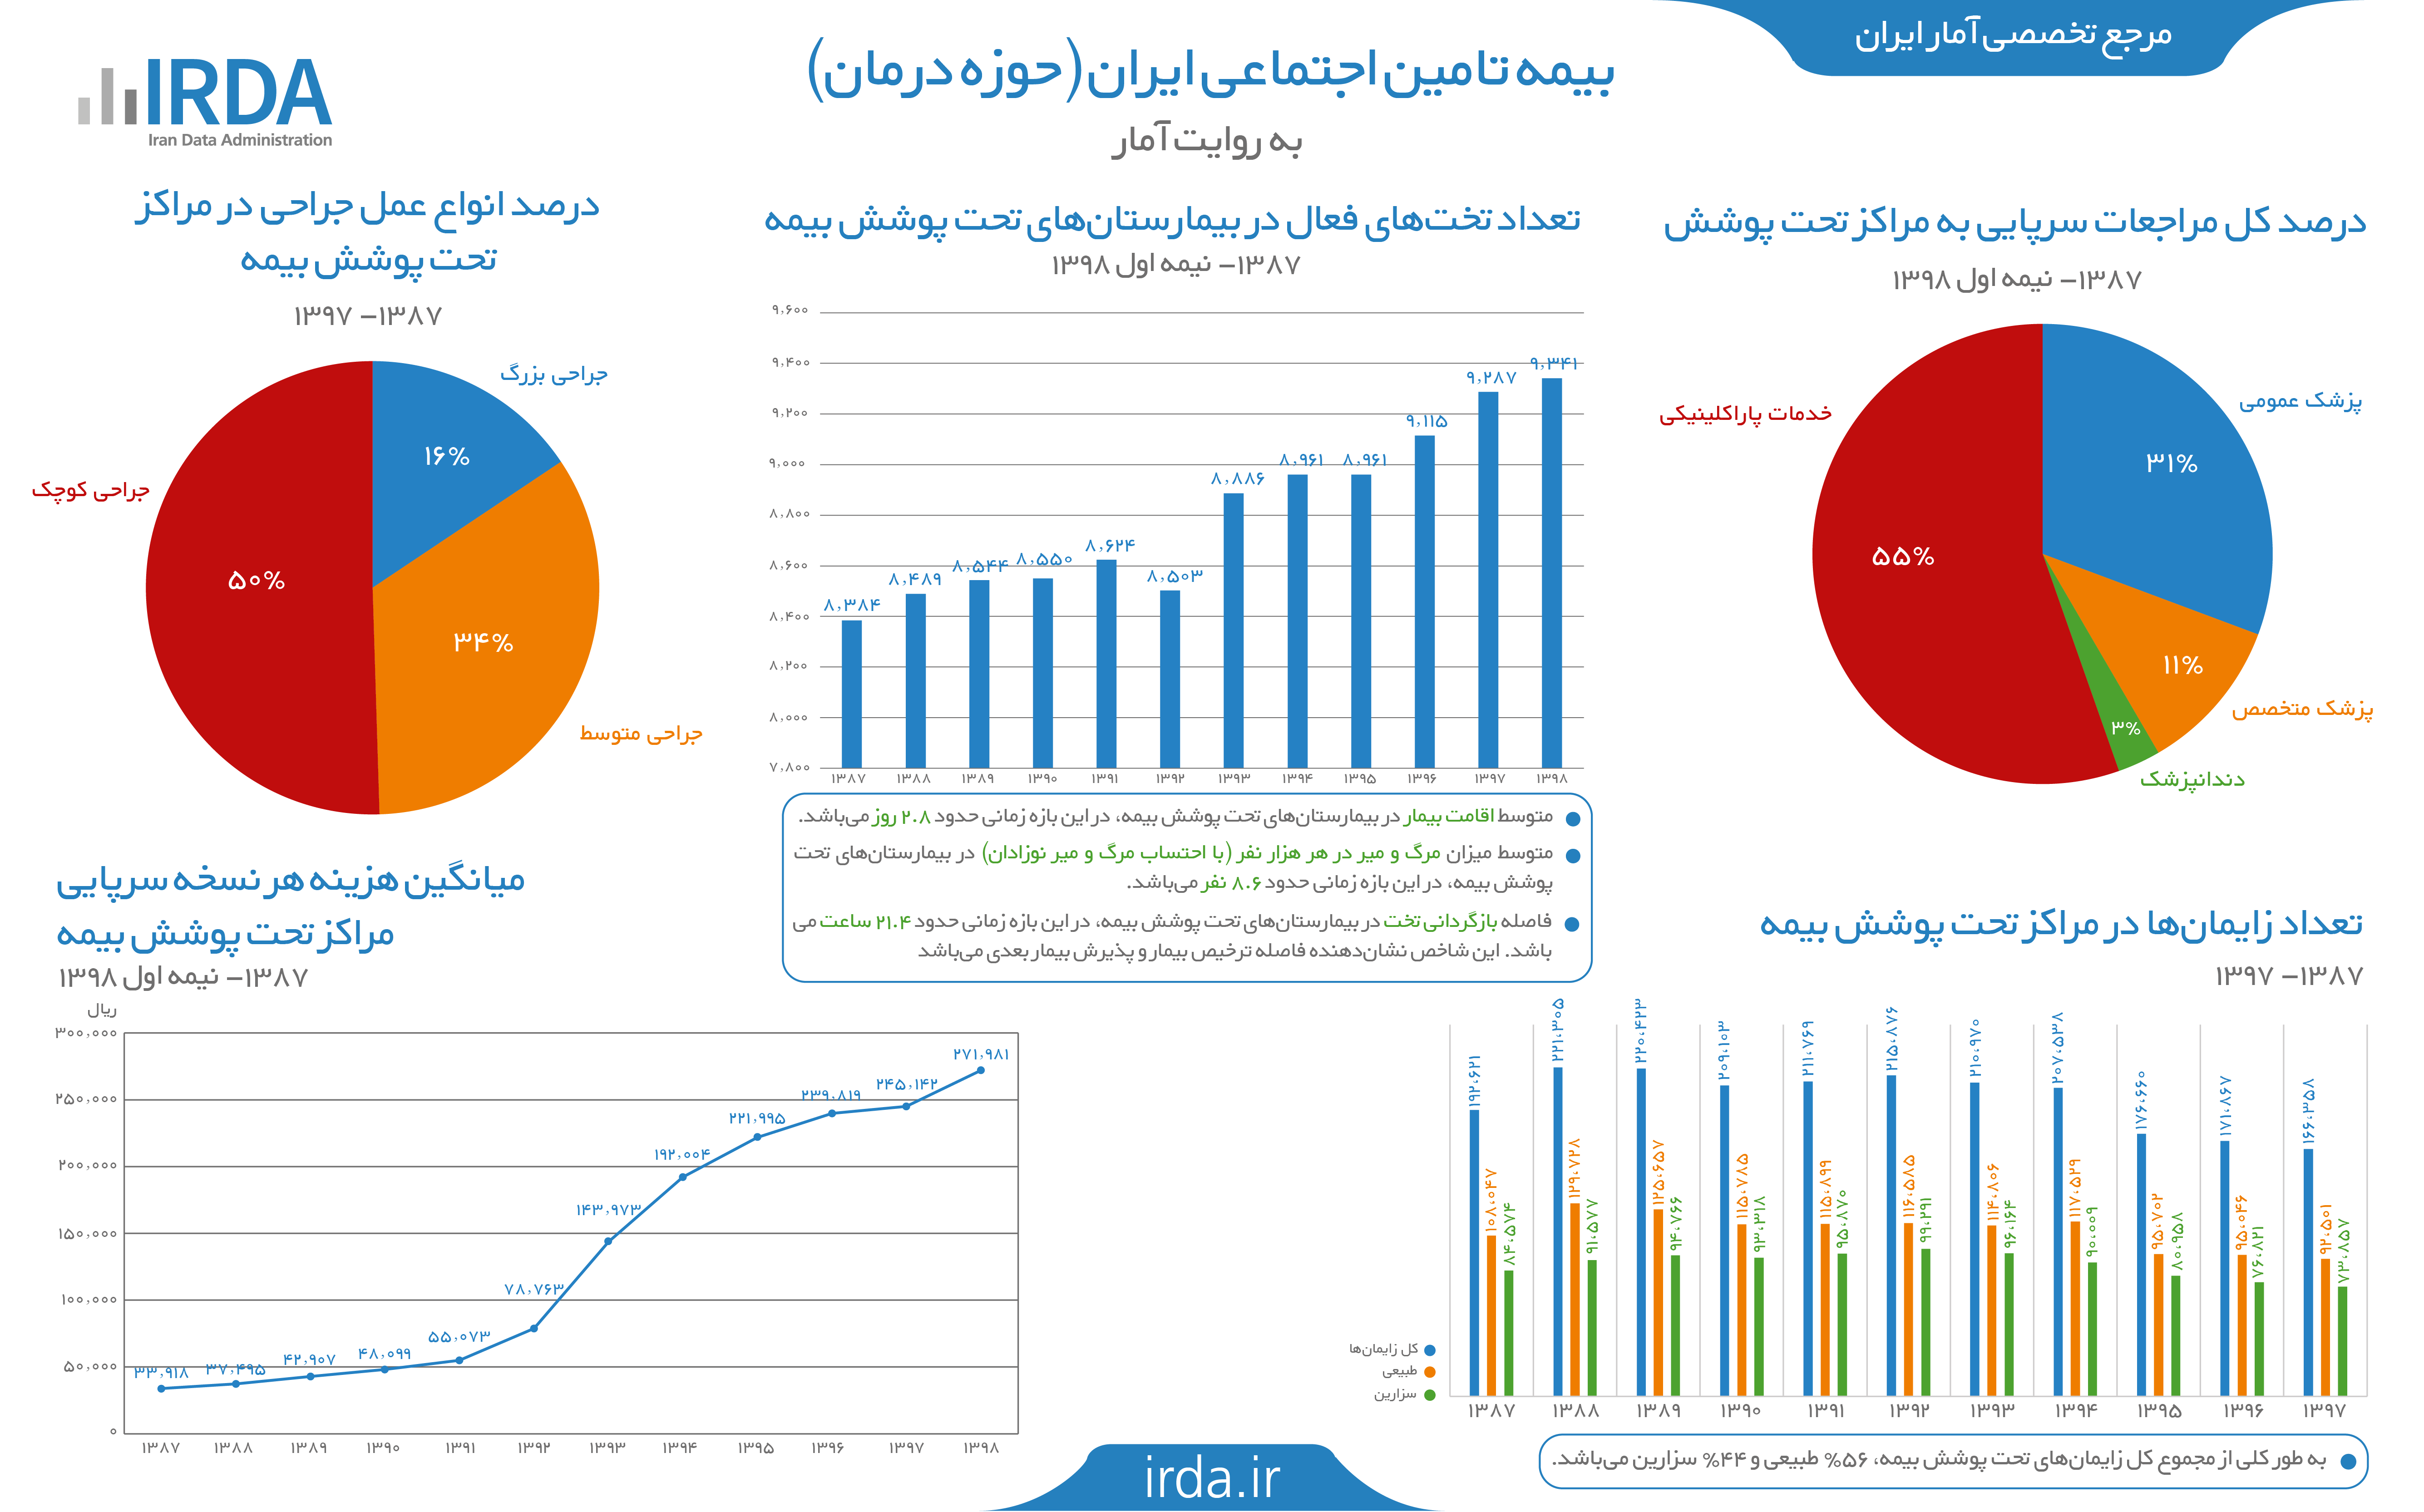 بیمه تامین اجتماعی در ایران به روایت آمار (حوزه درمان)